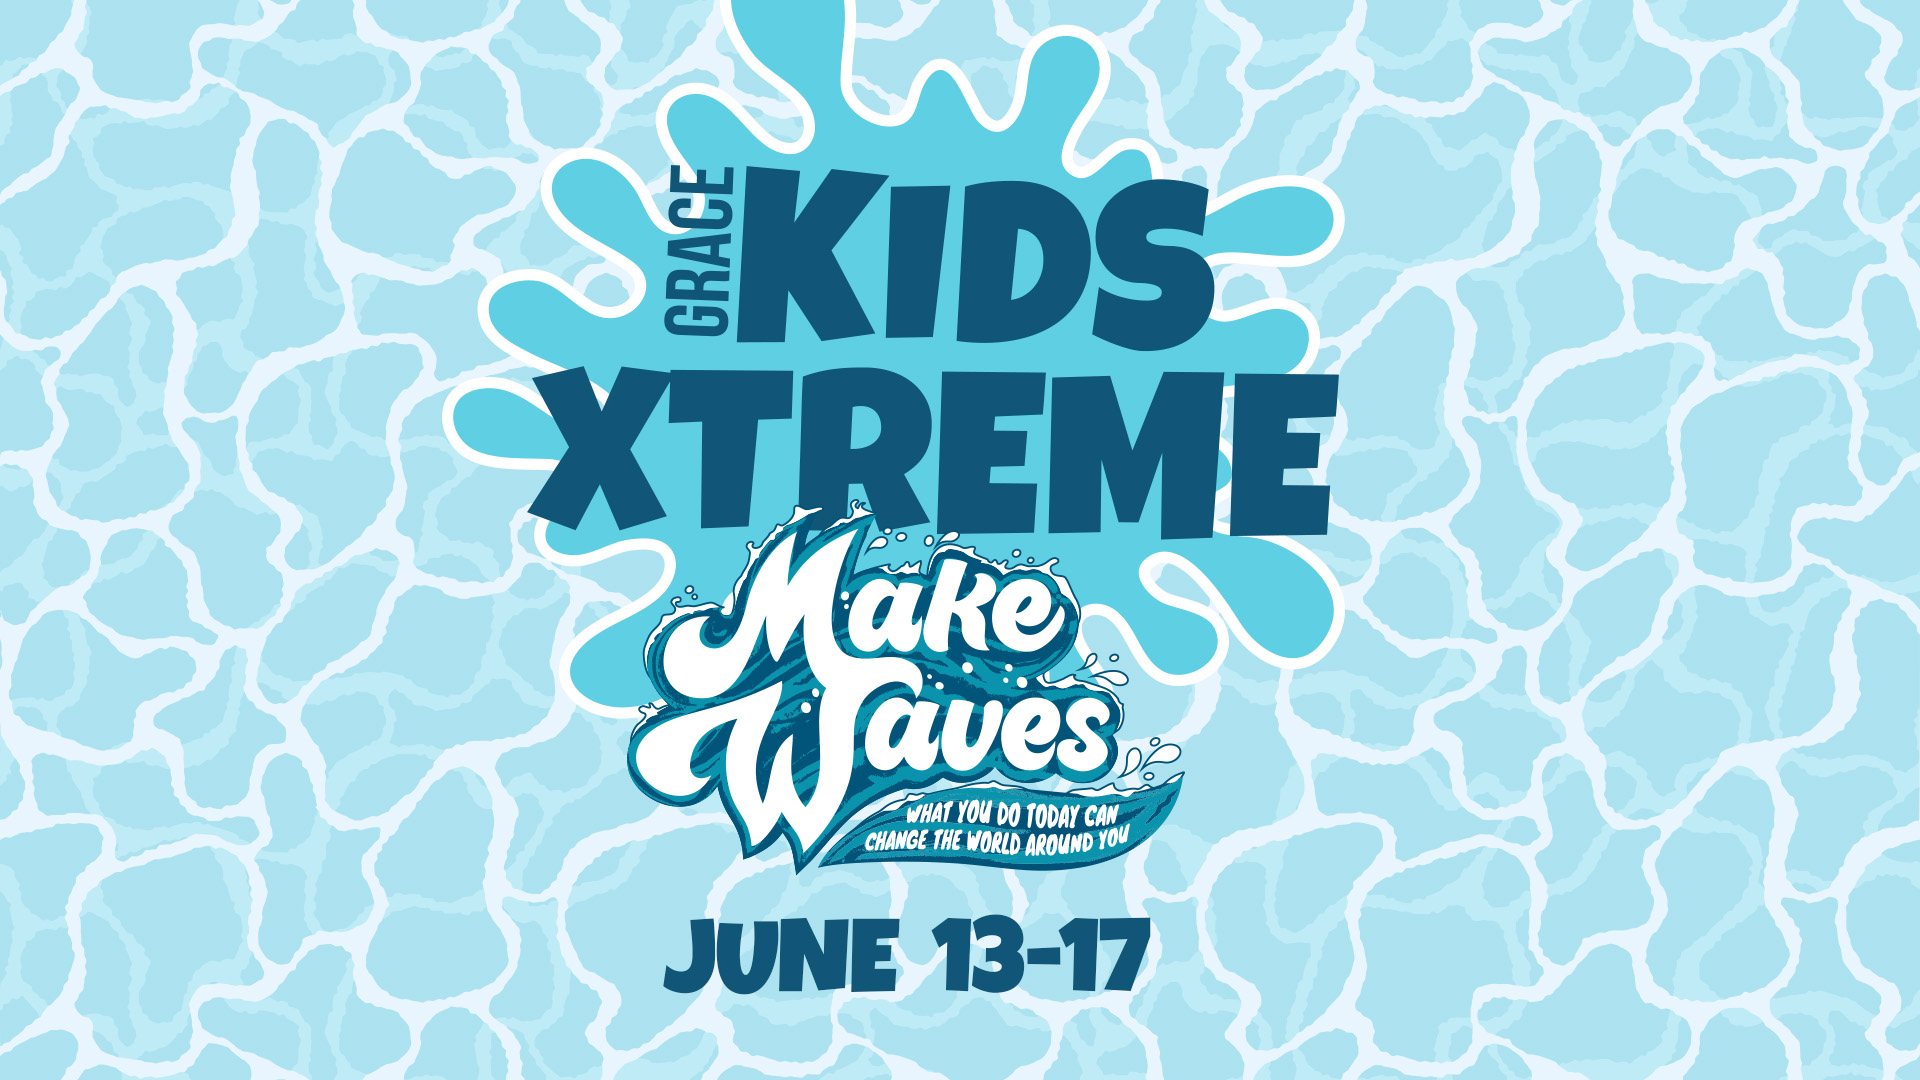 Grace Kids Xtreme

June 13-17
5:30 - 8:00pm
Clear Creek Valley Park
